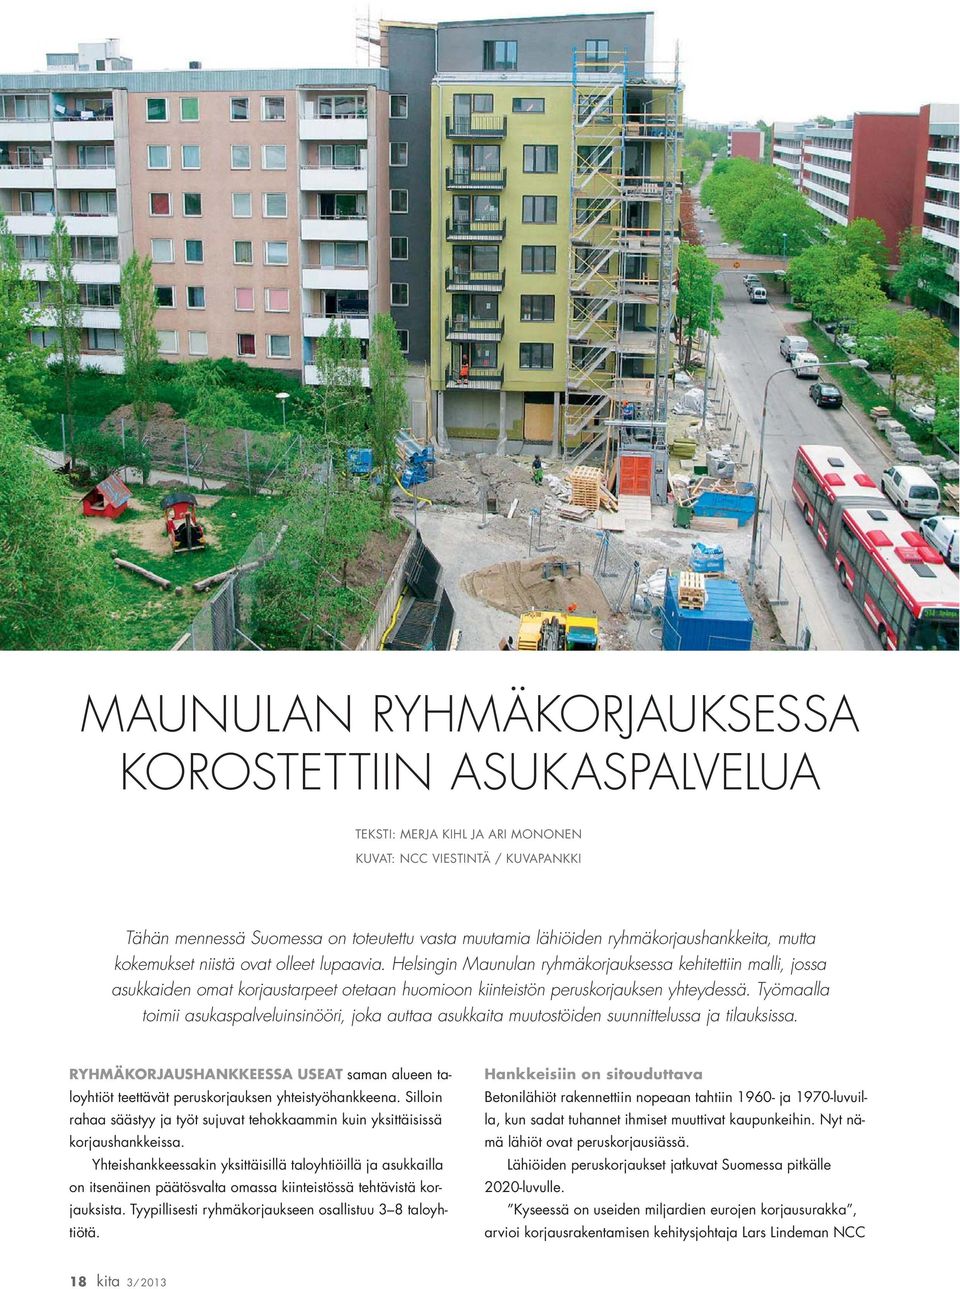 Helsingin Maunulan ryhmäkorjauksessa kehitettiin malli, jossa asukkaiden omat korjaustarpeet otetaan huomioon kiinteistön peruskorjauksen yhteydessä.